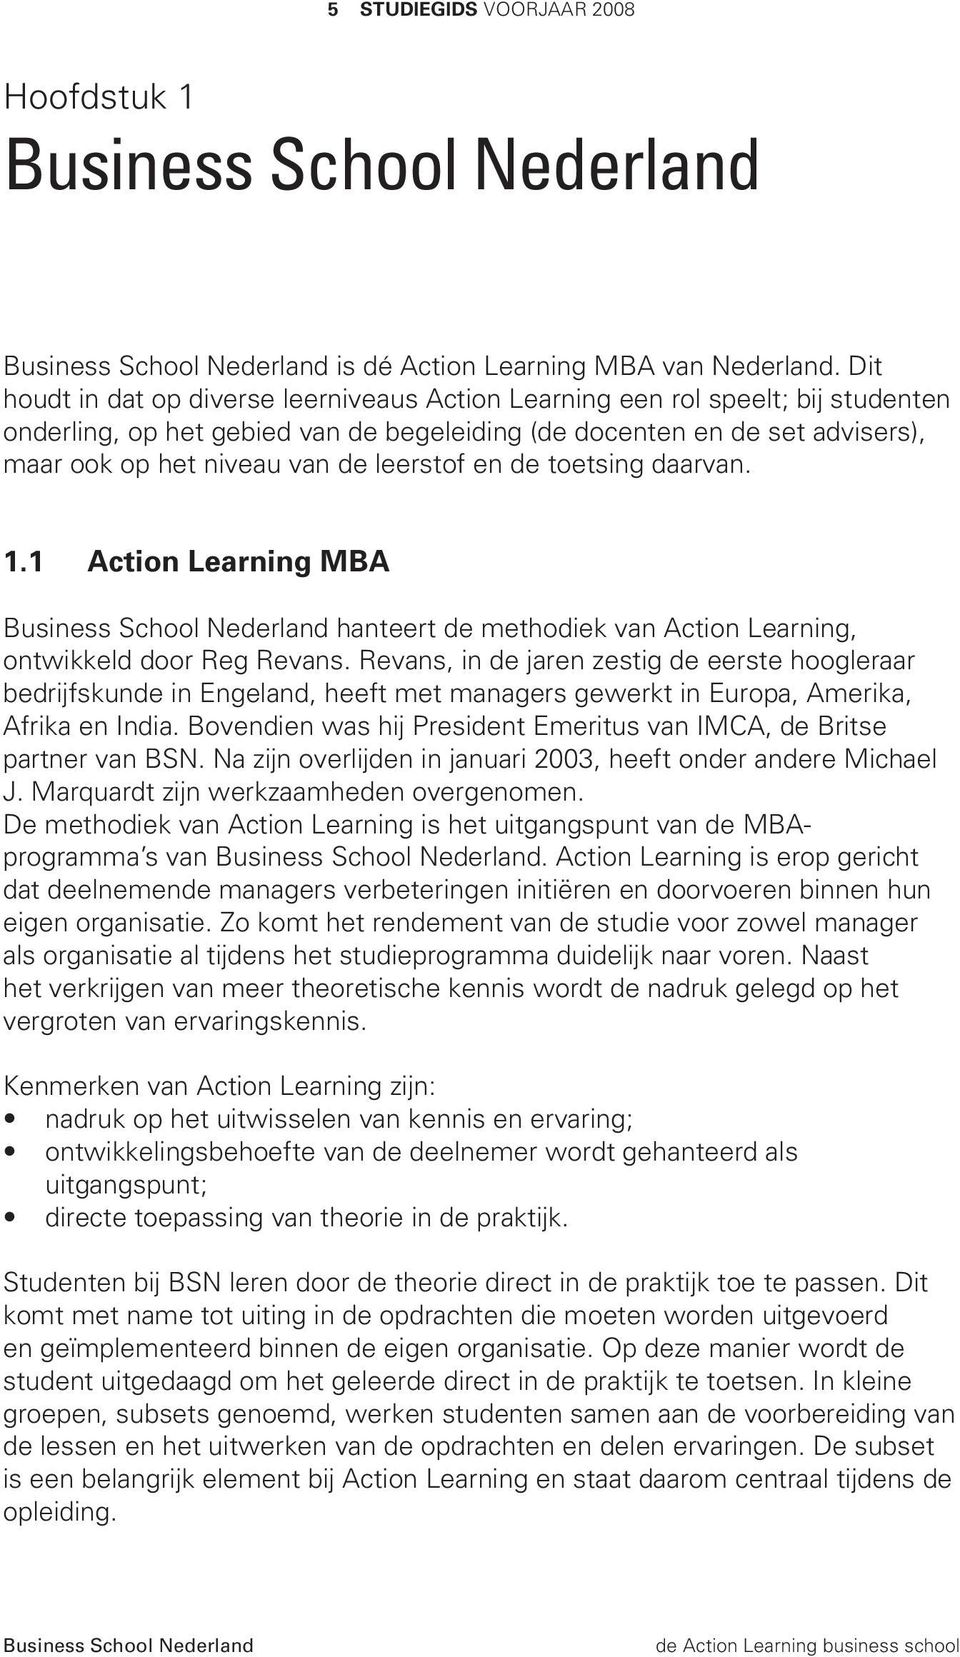 leerstof en de toetsing daarvan. 1.1 Action Learning MBA hanteert de methodiek van Action Learning, ontwikkeld door Reg Revans.